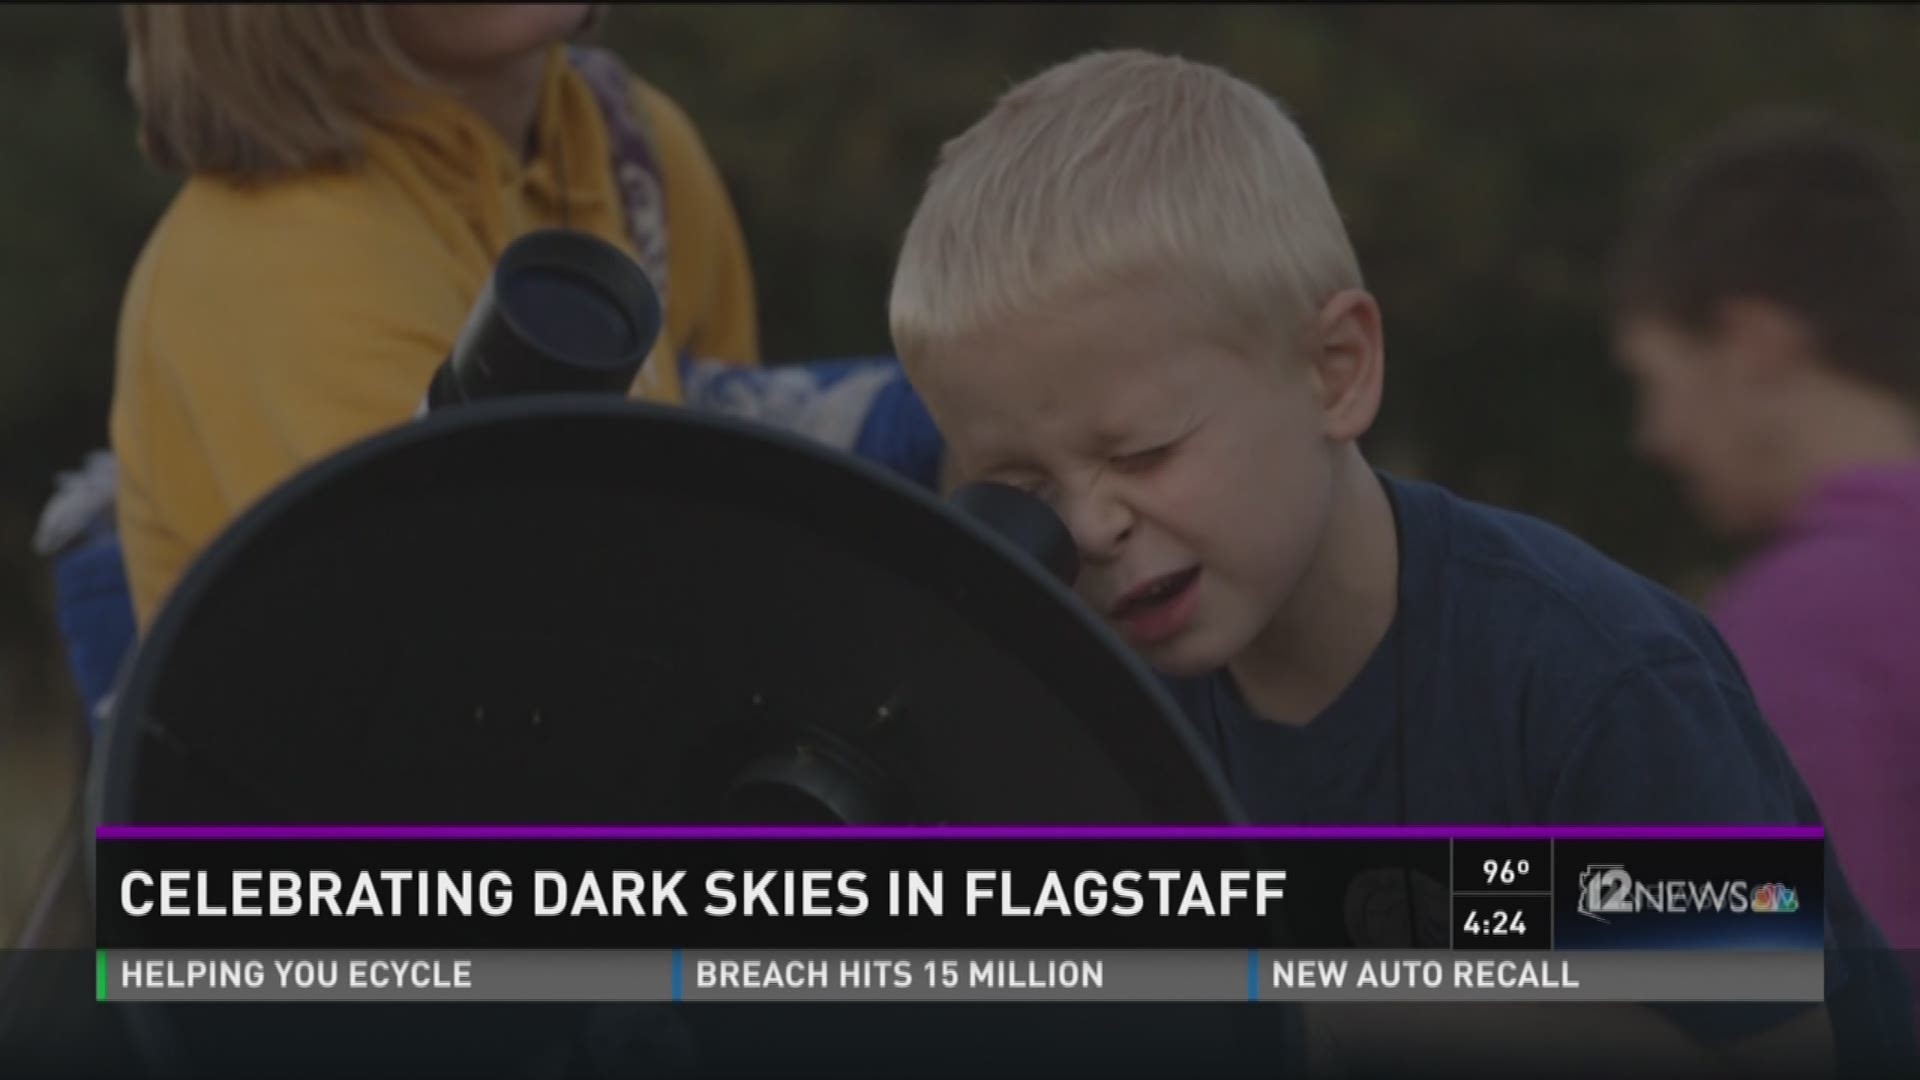 Celebrating dark skies in Flagstaff.